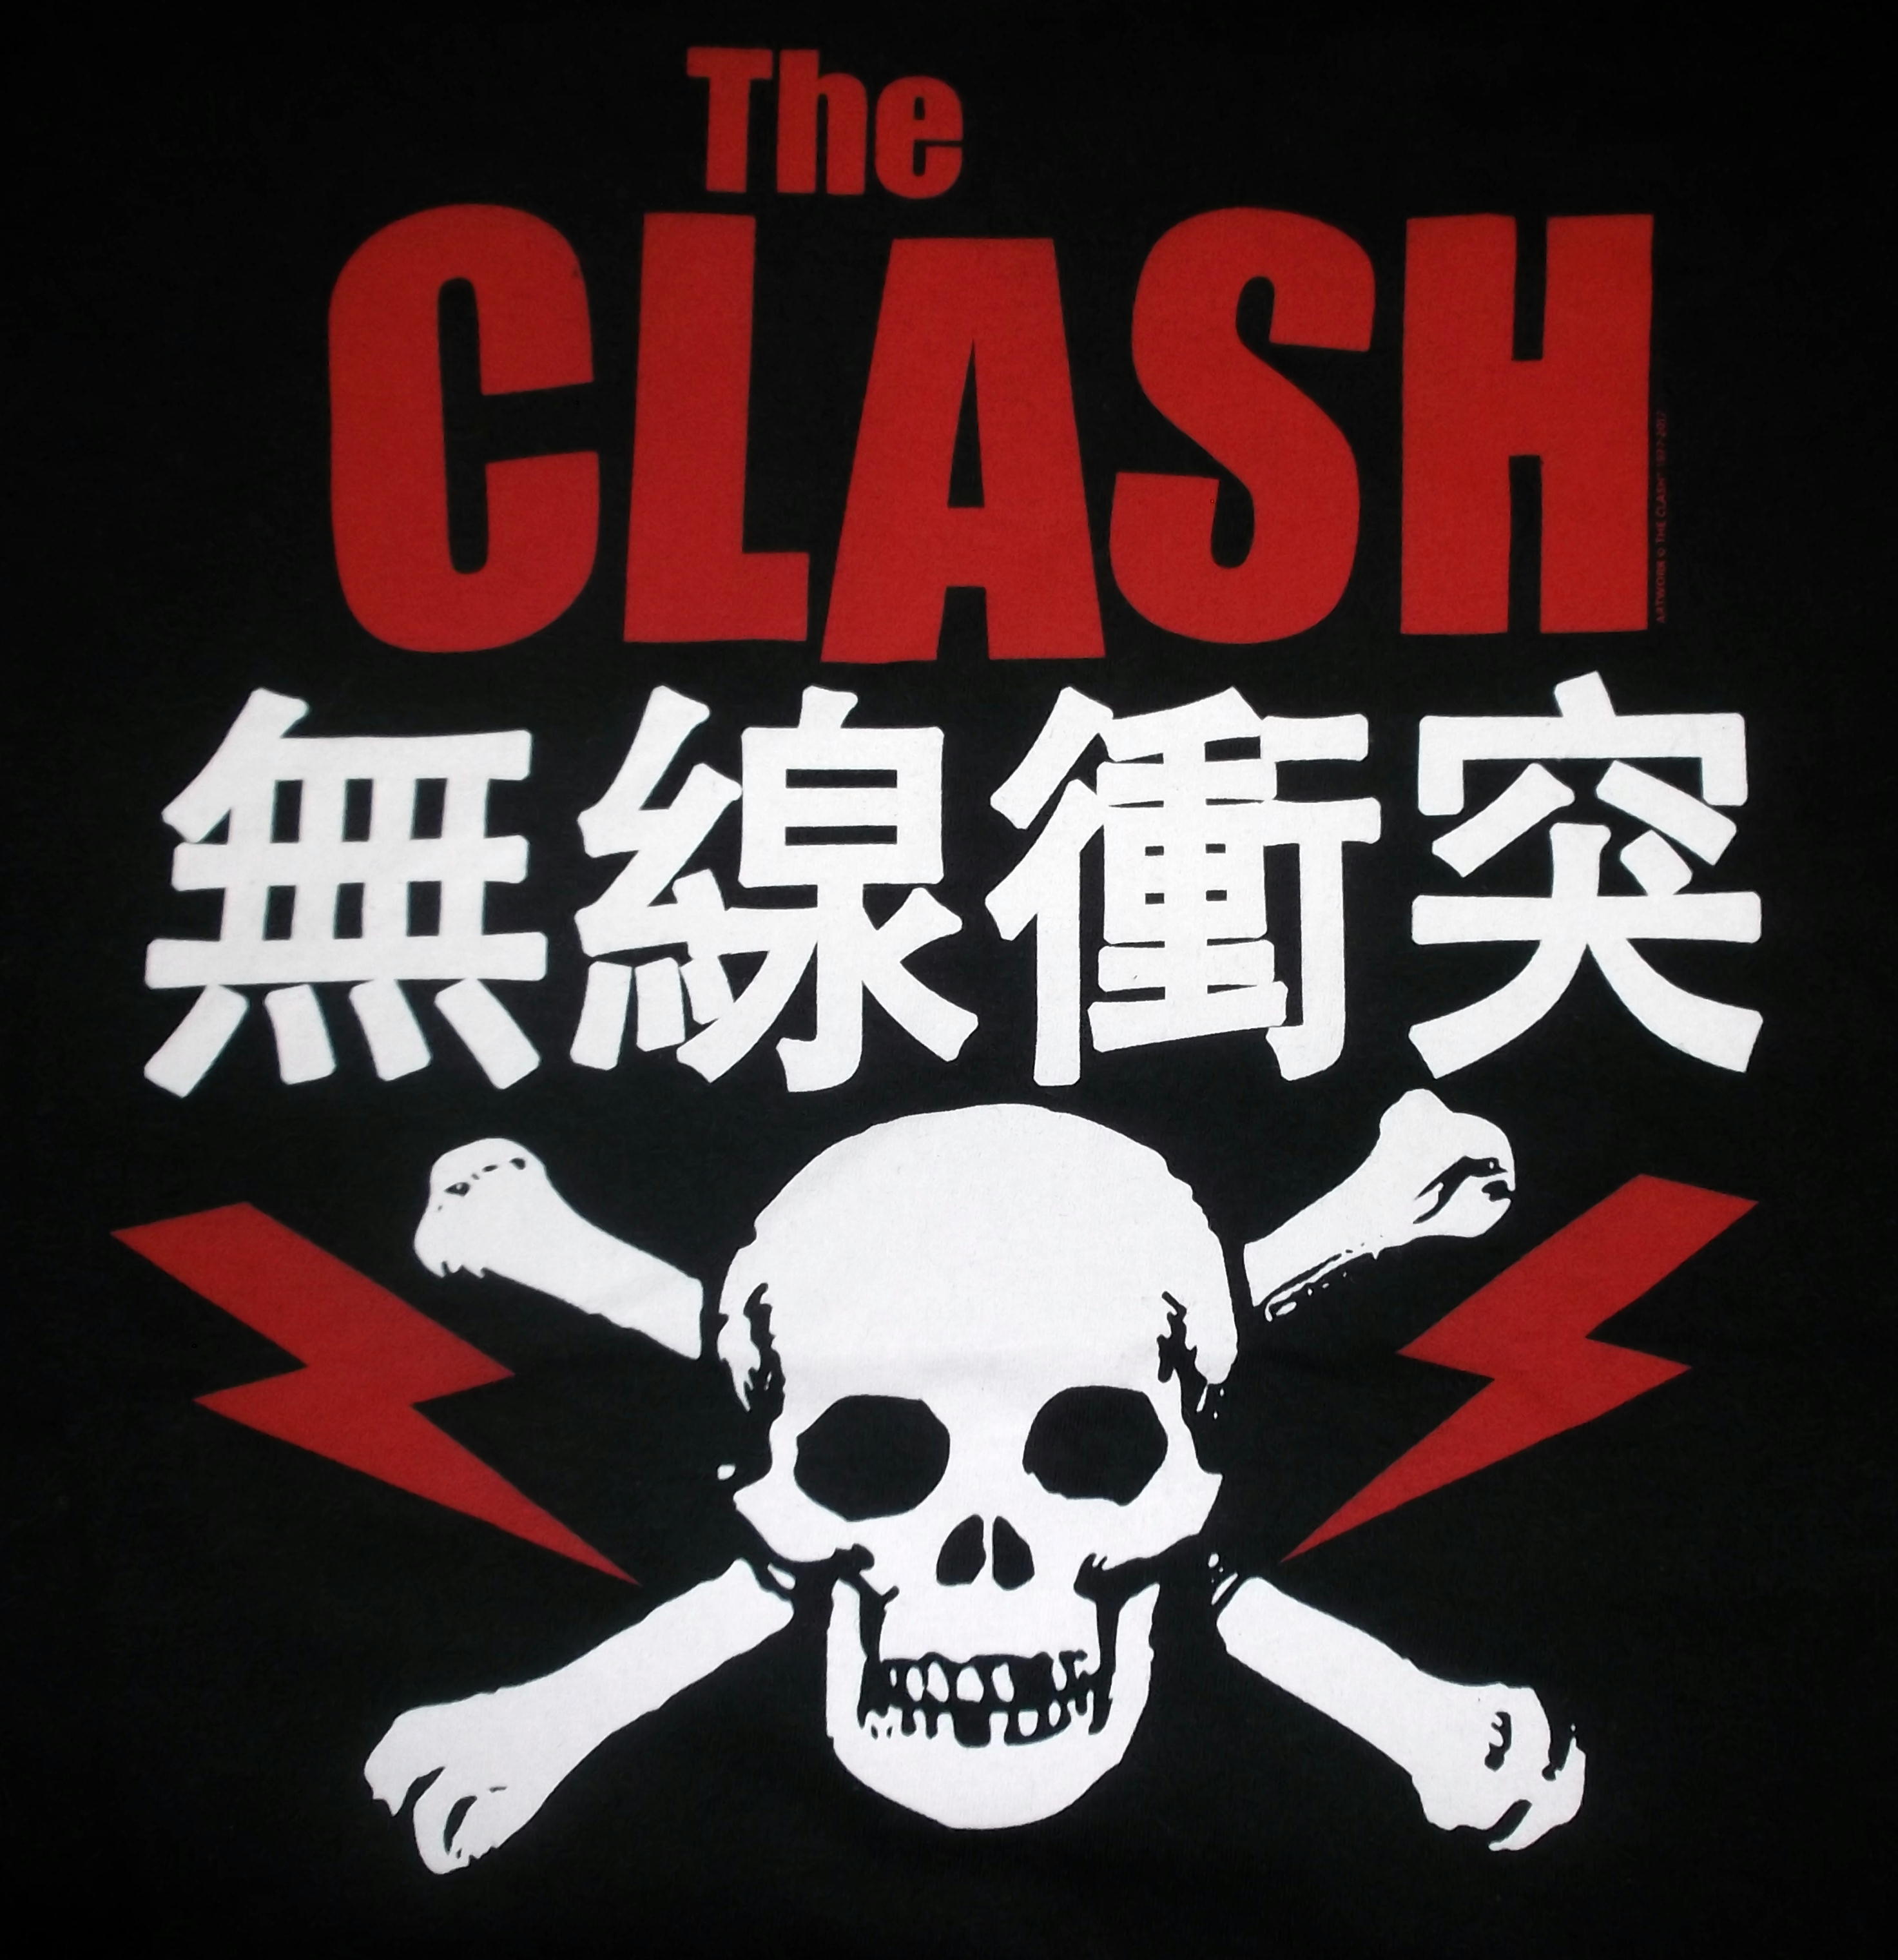 バンドTシャツ 通販 ザ・クラッシュ The Clash Tシャツ 販売,無線衝突 パンク  ロックTシャツ,ジョーストラマー,ミックジョーンズ,ポールシムノン,通販